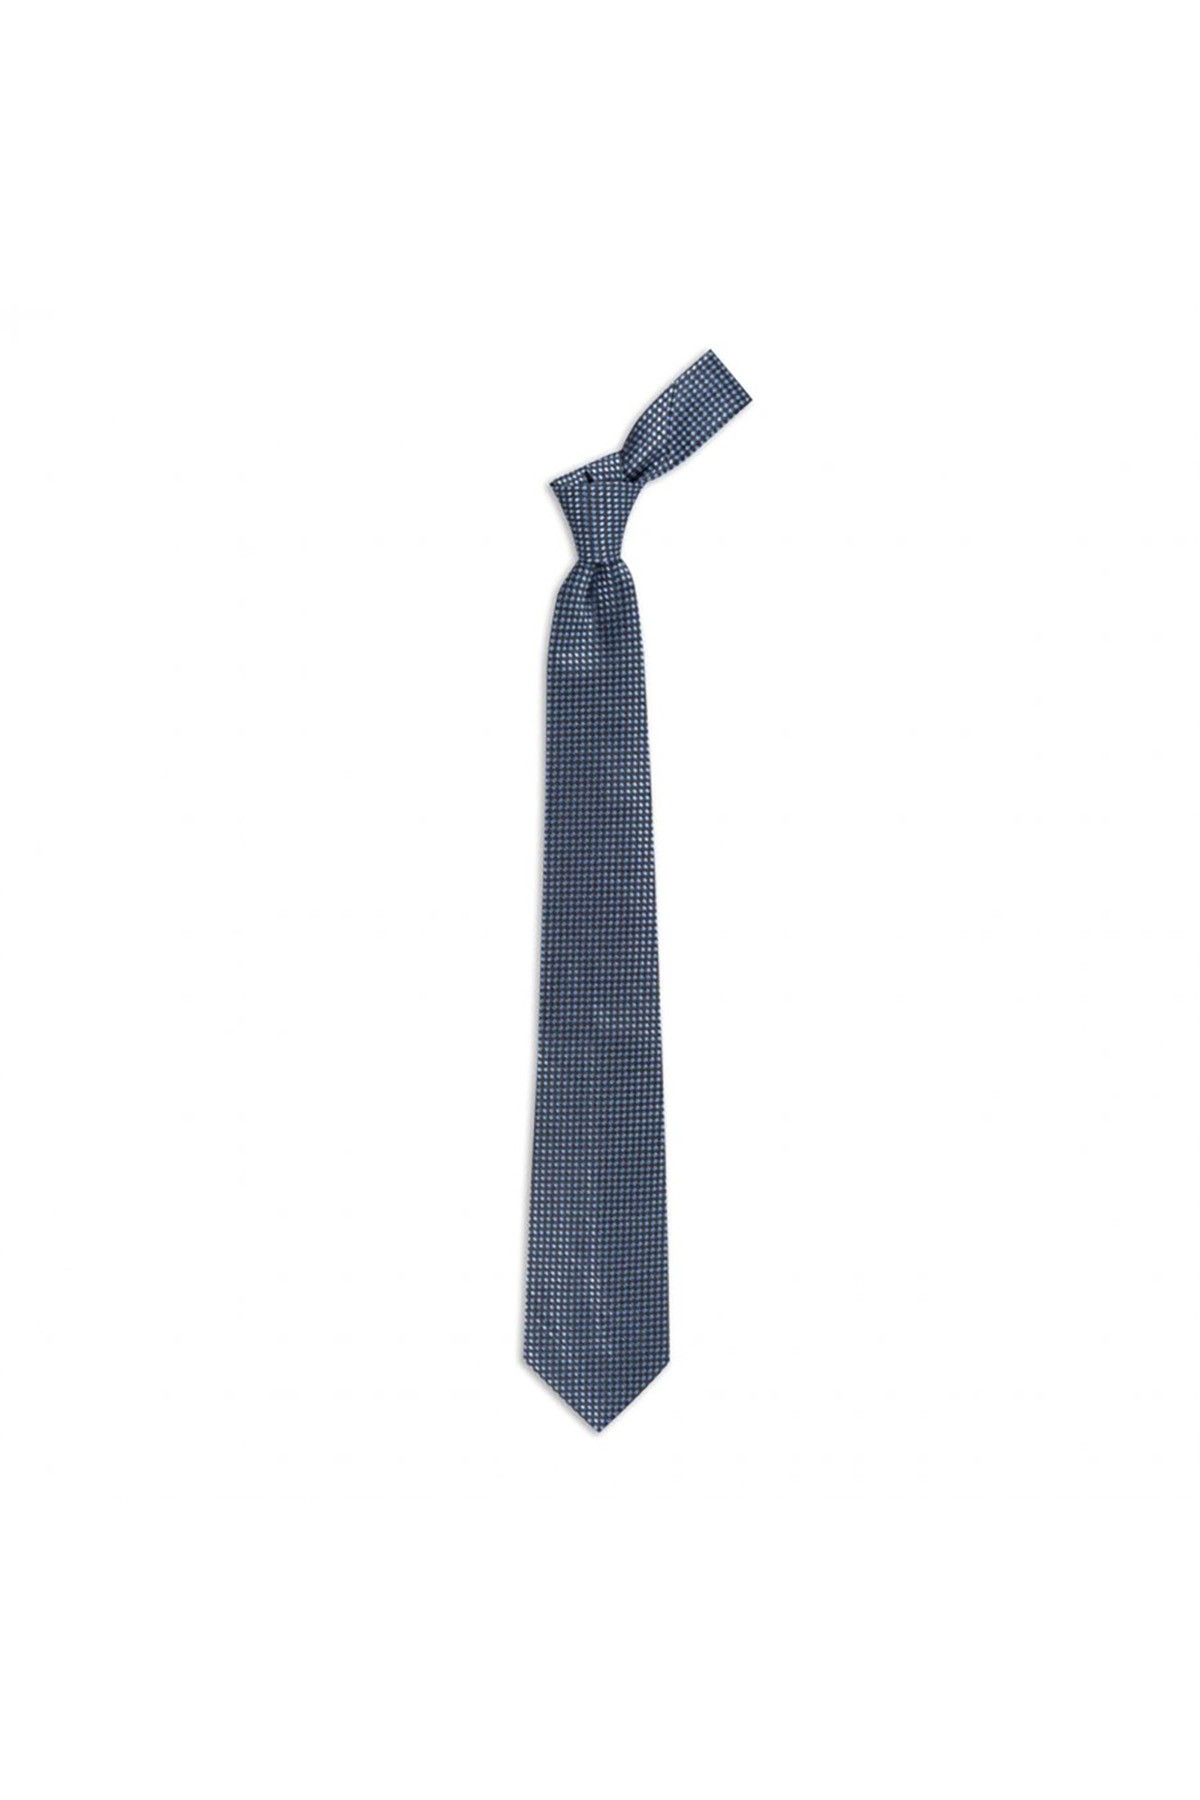 Desenli 8 cm genişliğinde yün ipek karışımlı kravat - Gri